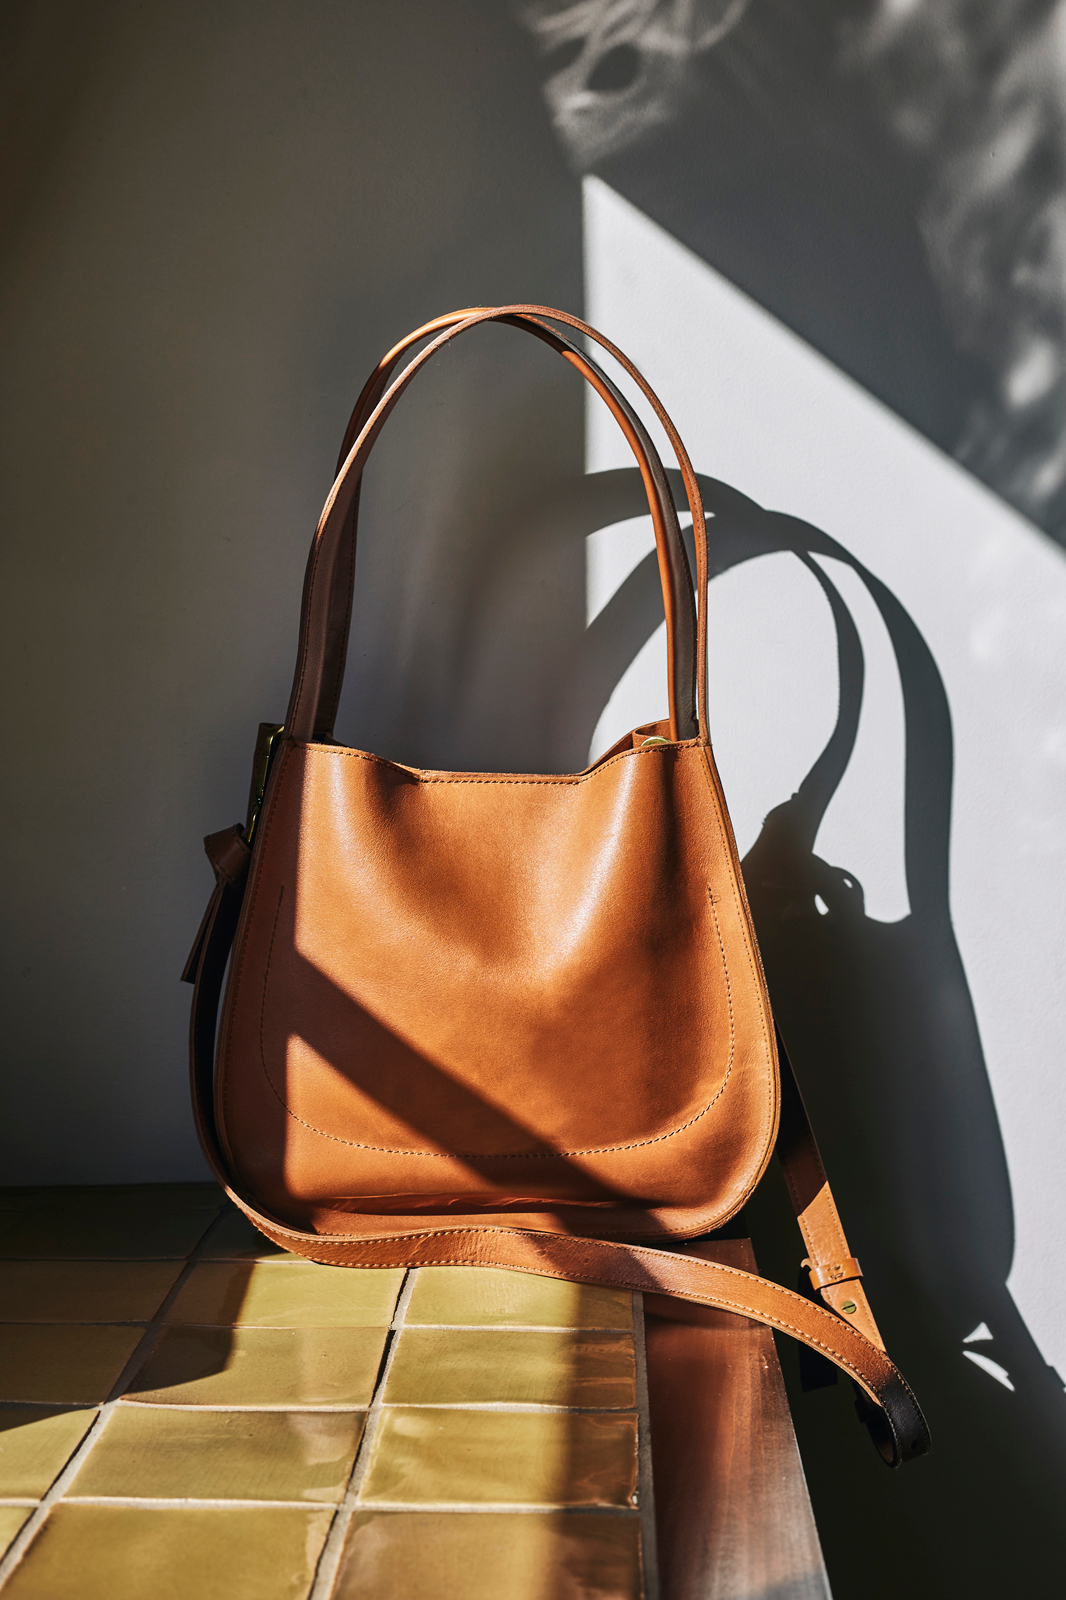 Handbag with shadows and light